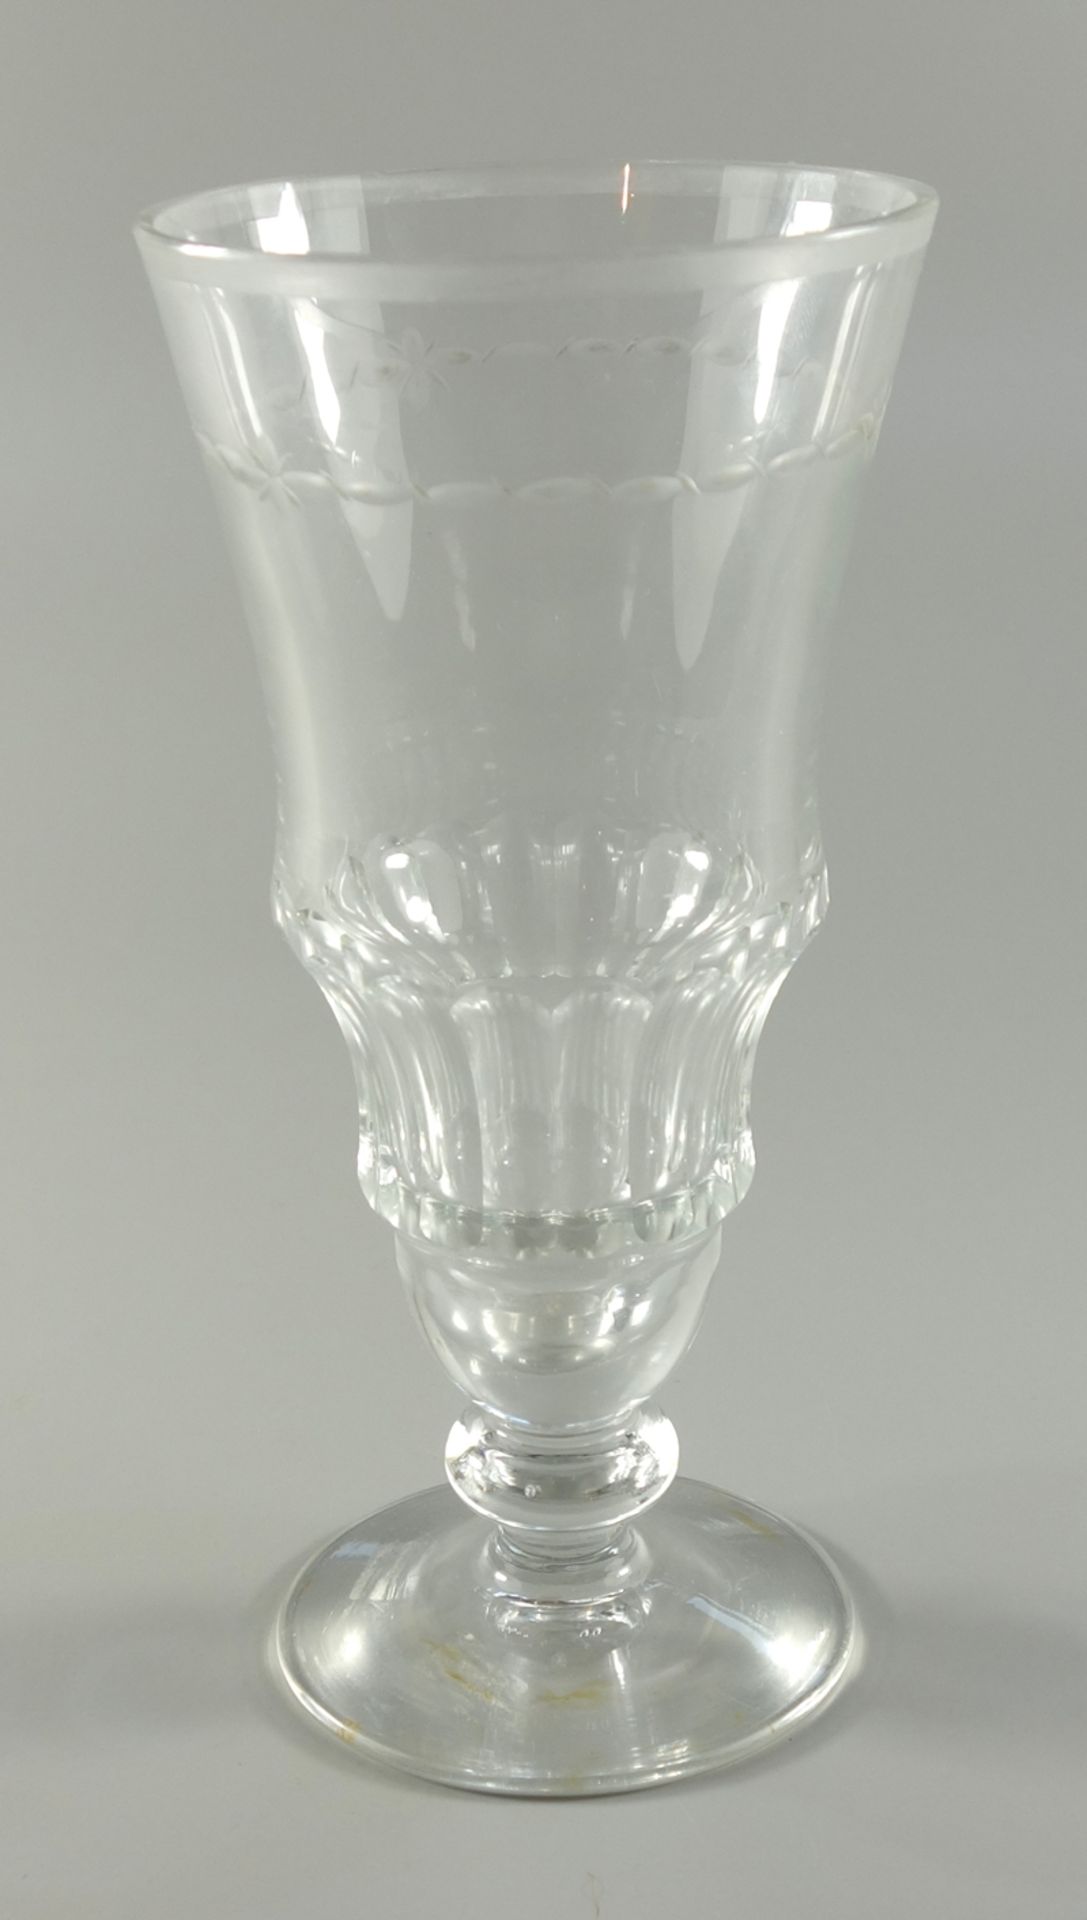 Kelchglas, Mitte 19.Jh., farbloses Glas, Scheibenfuß, Korpus mit umlaufendem Schälschliff, H.16,7cm